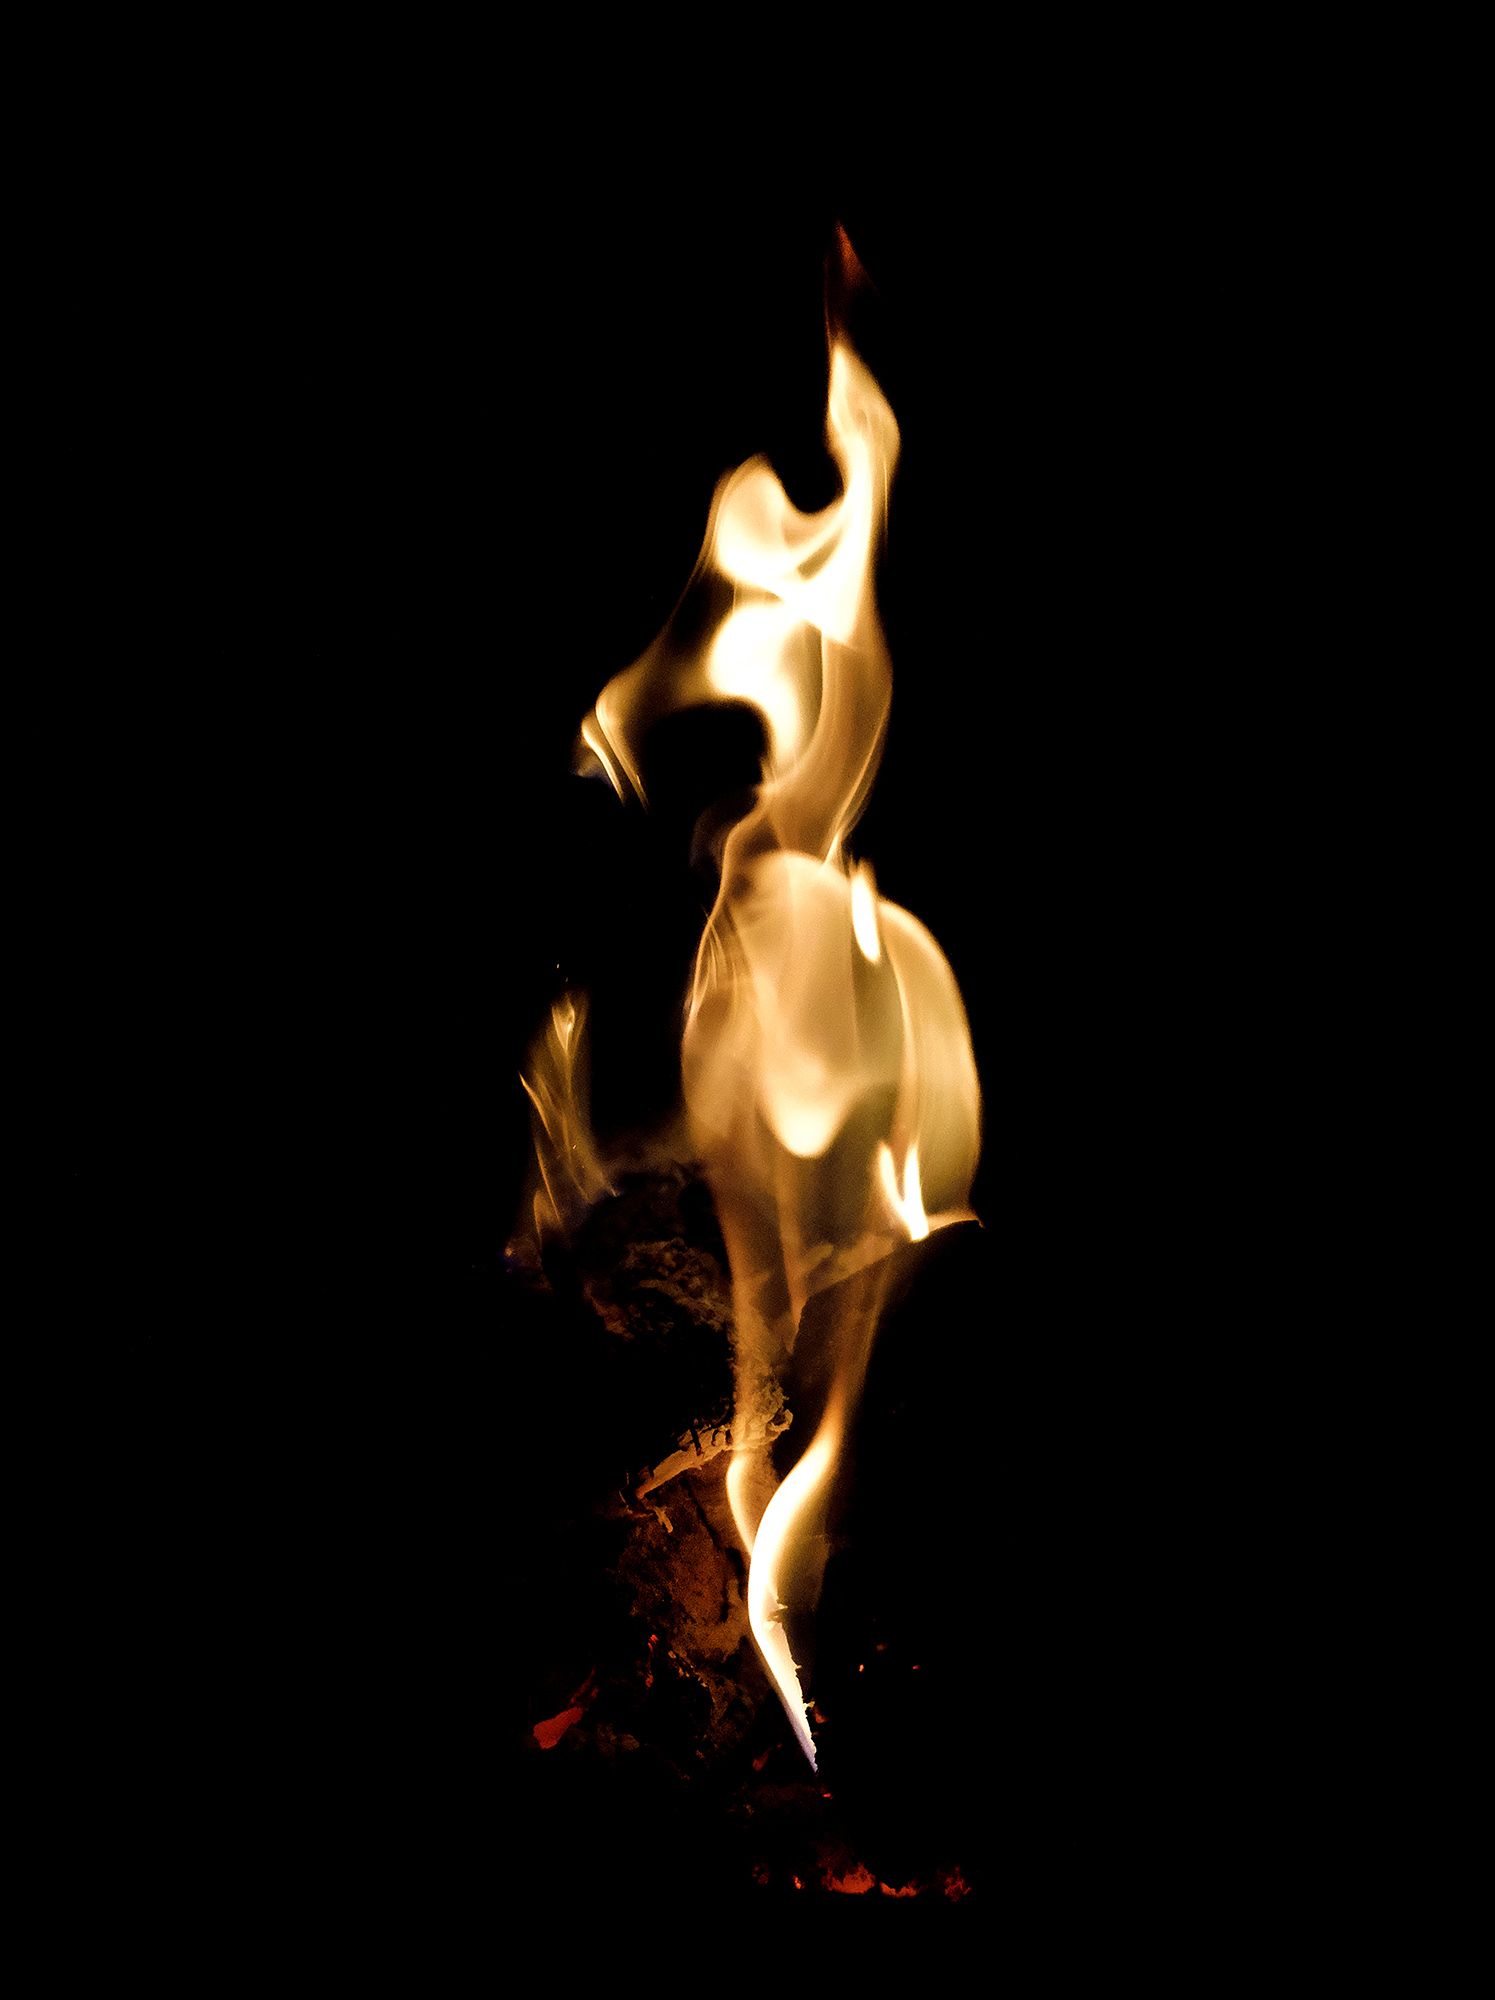 Spirit of the Fire #4 ©2021 L. Aviva Diamond